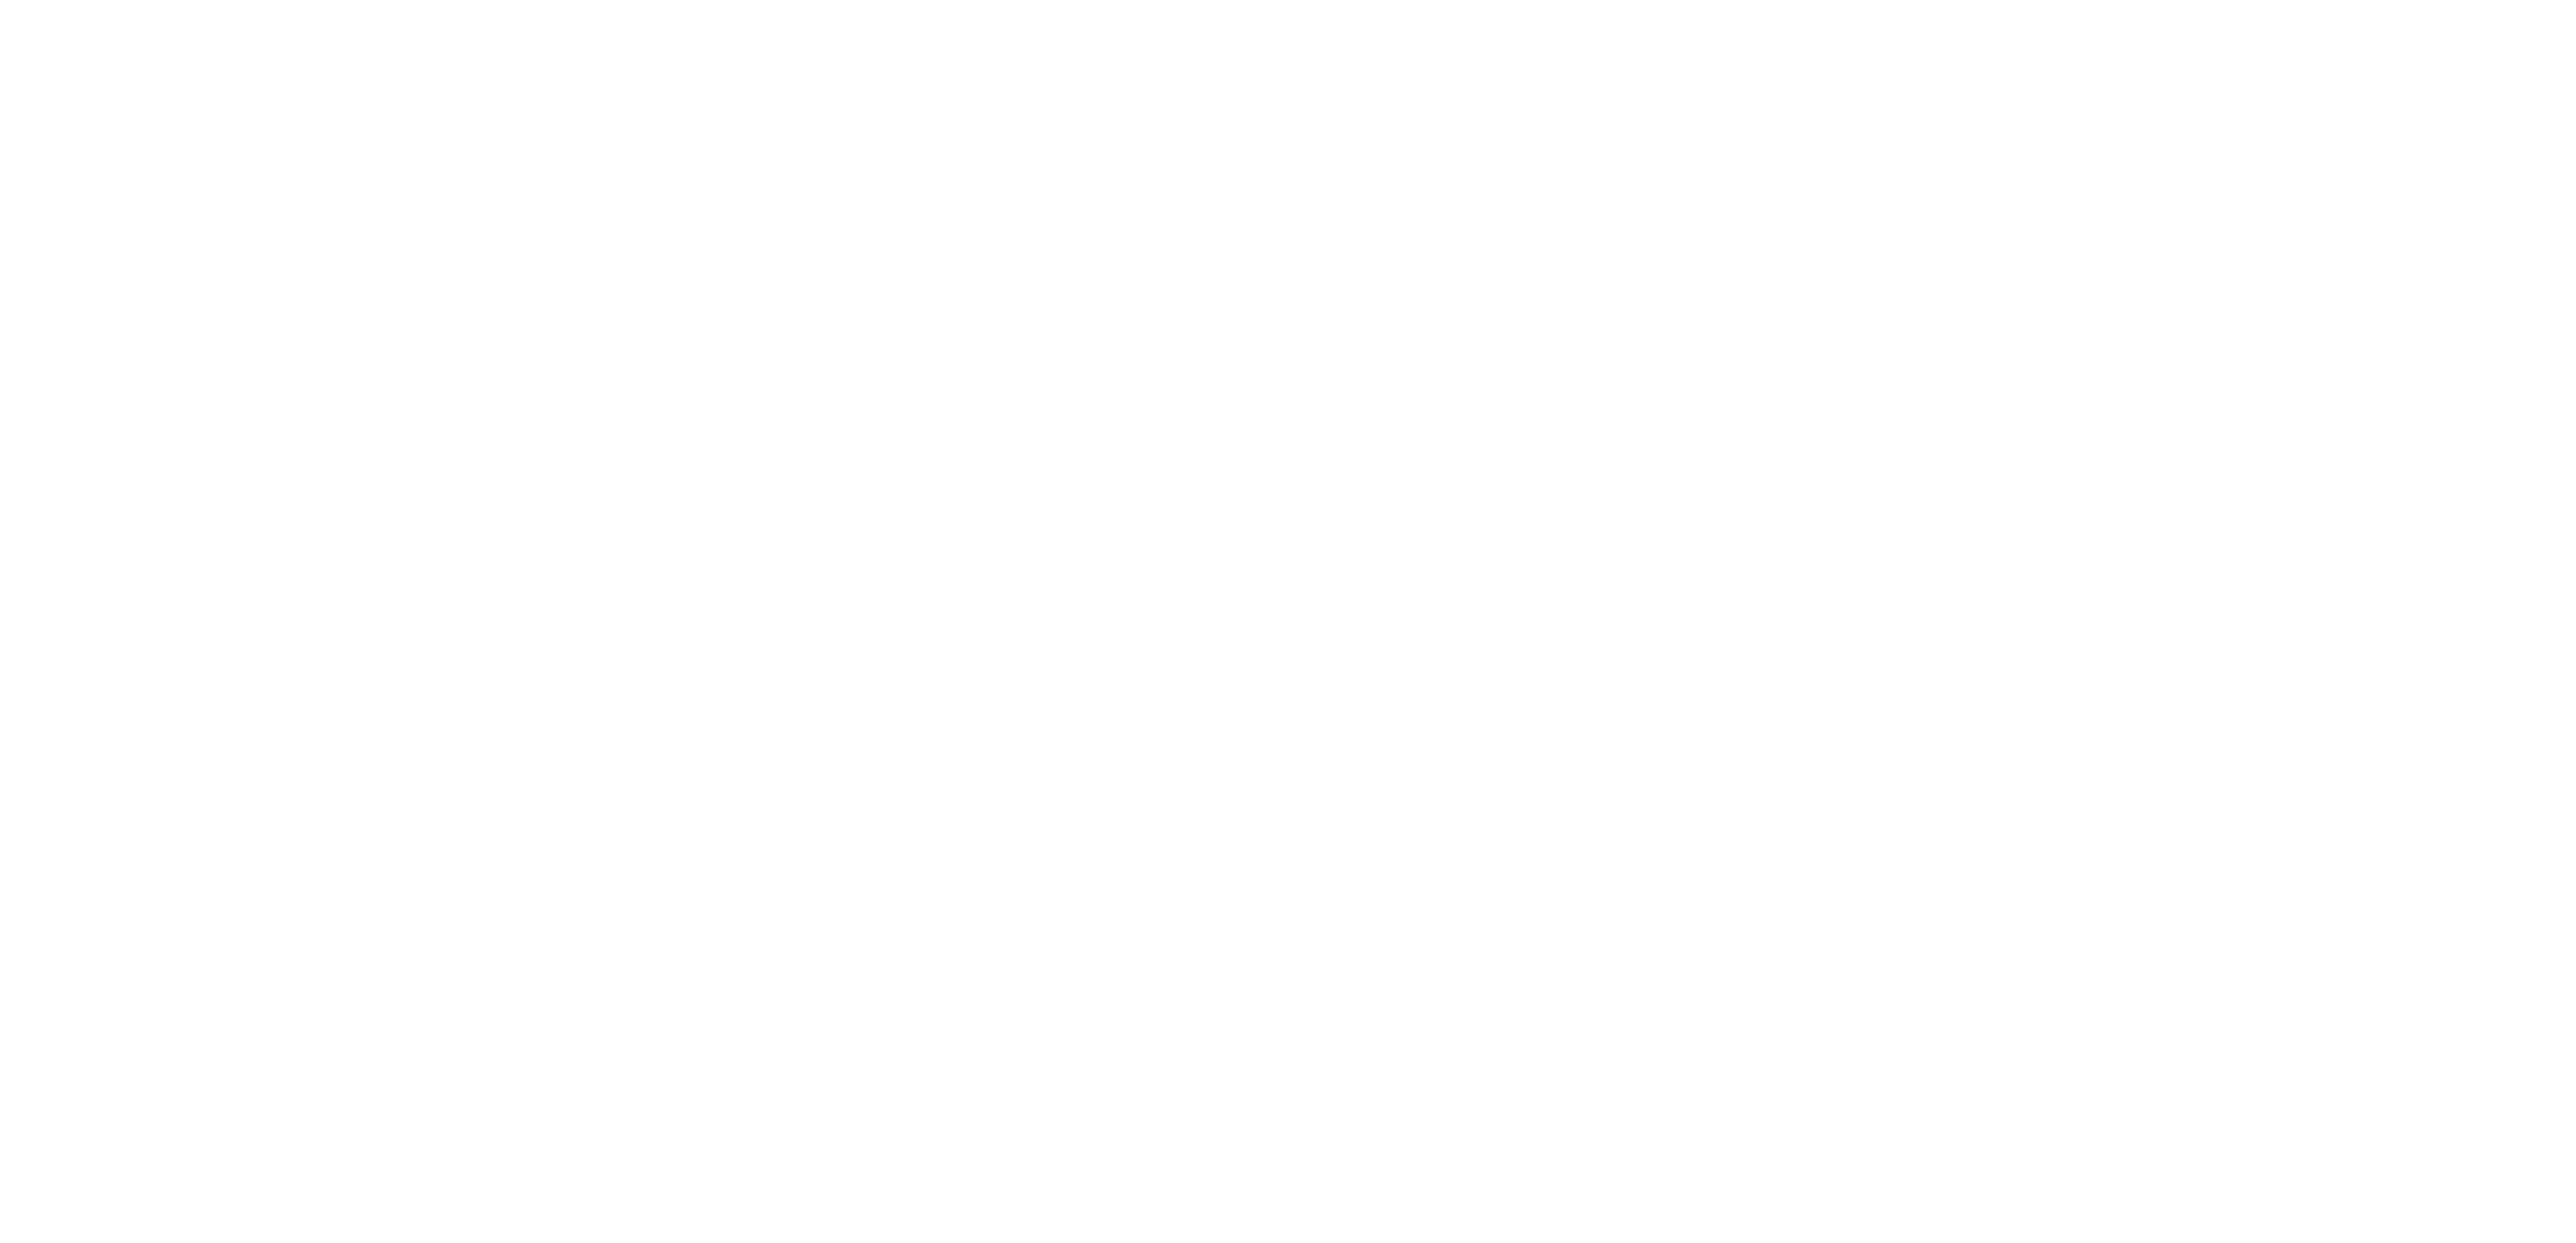 Service de toiture Ferblanterie P.Dufort